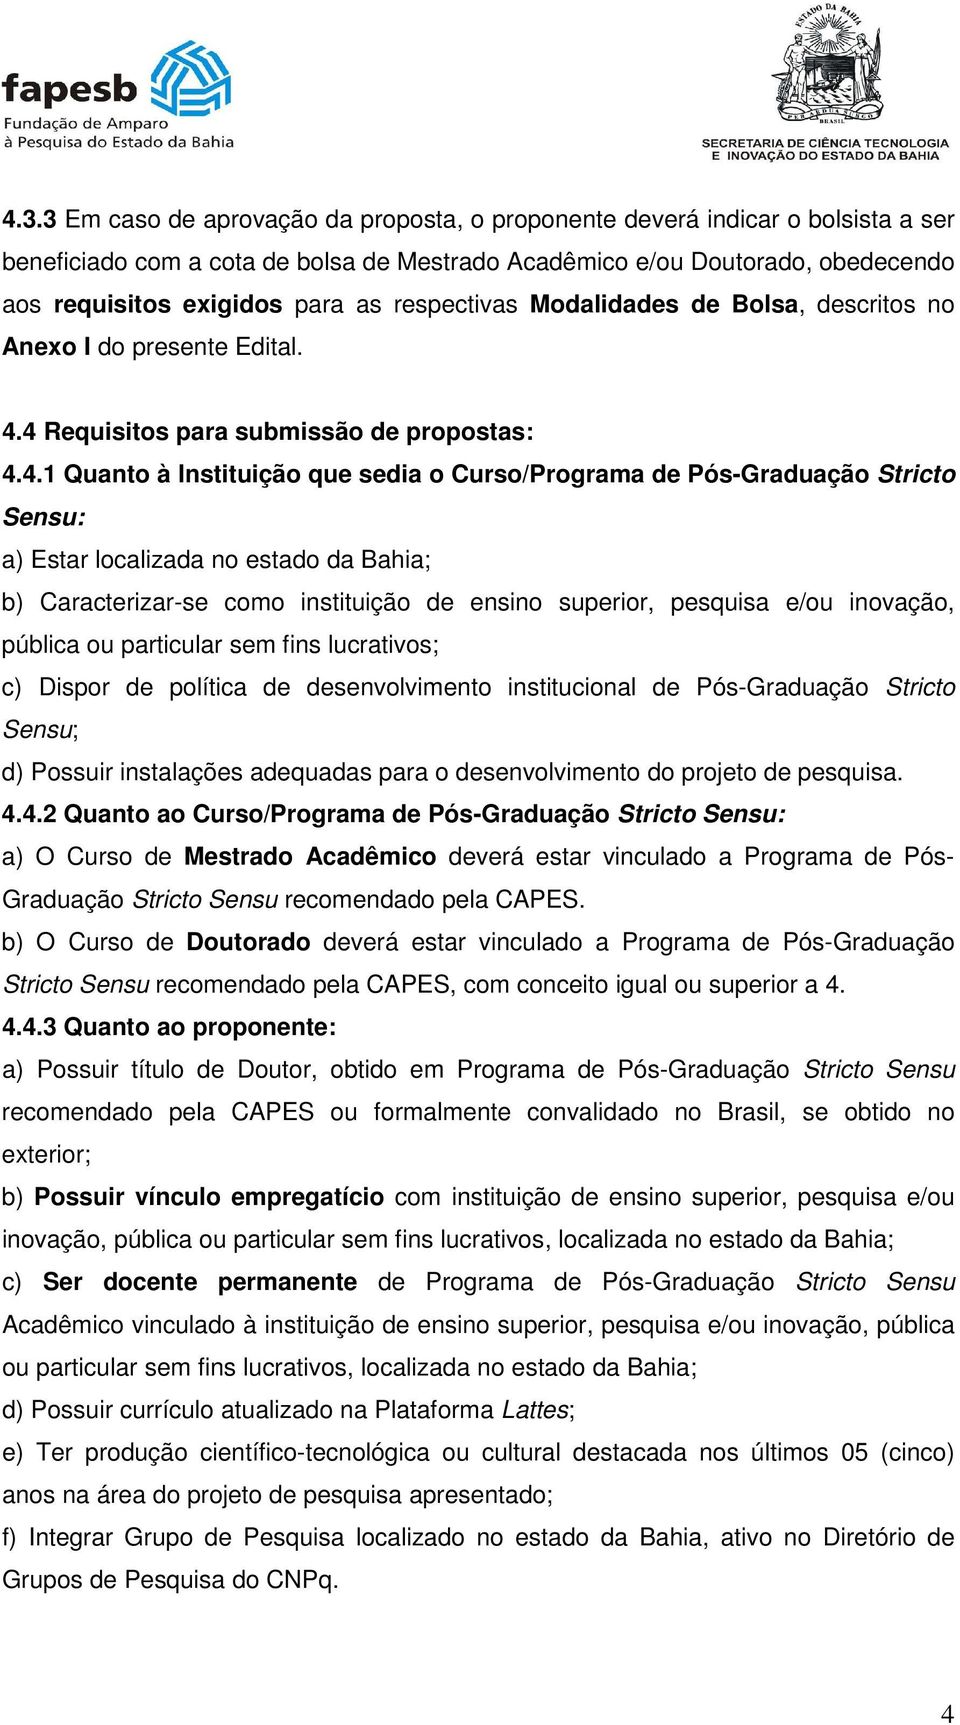 4 Requisitos para submissão de propostas: 4.4.1 Quanto à Instituição que sedia o Curso/Programa de Pós-Graduação Stricto Sensu: a) Estar localizada no estado da Bahia; b) Caracterizar-se como